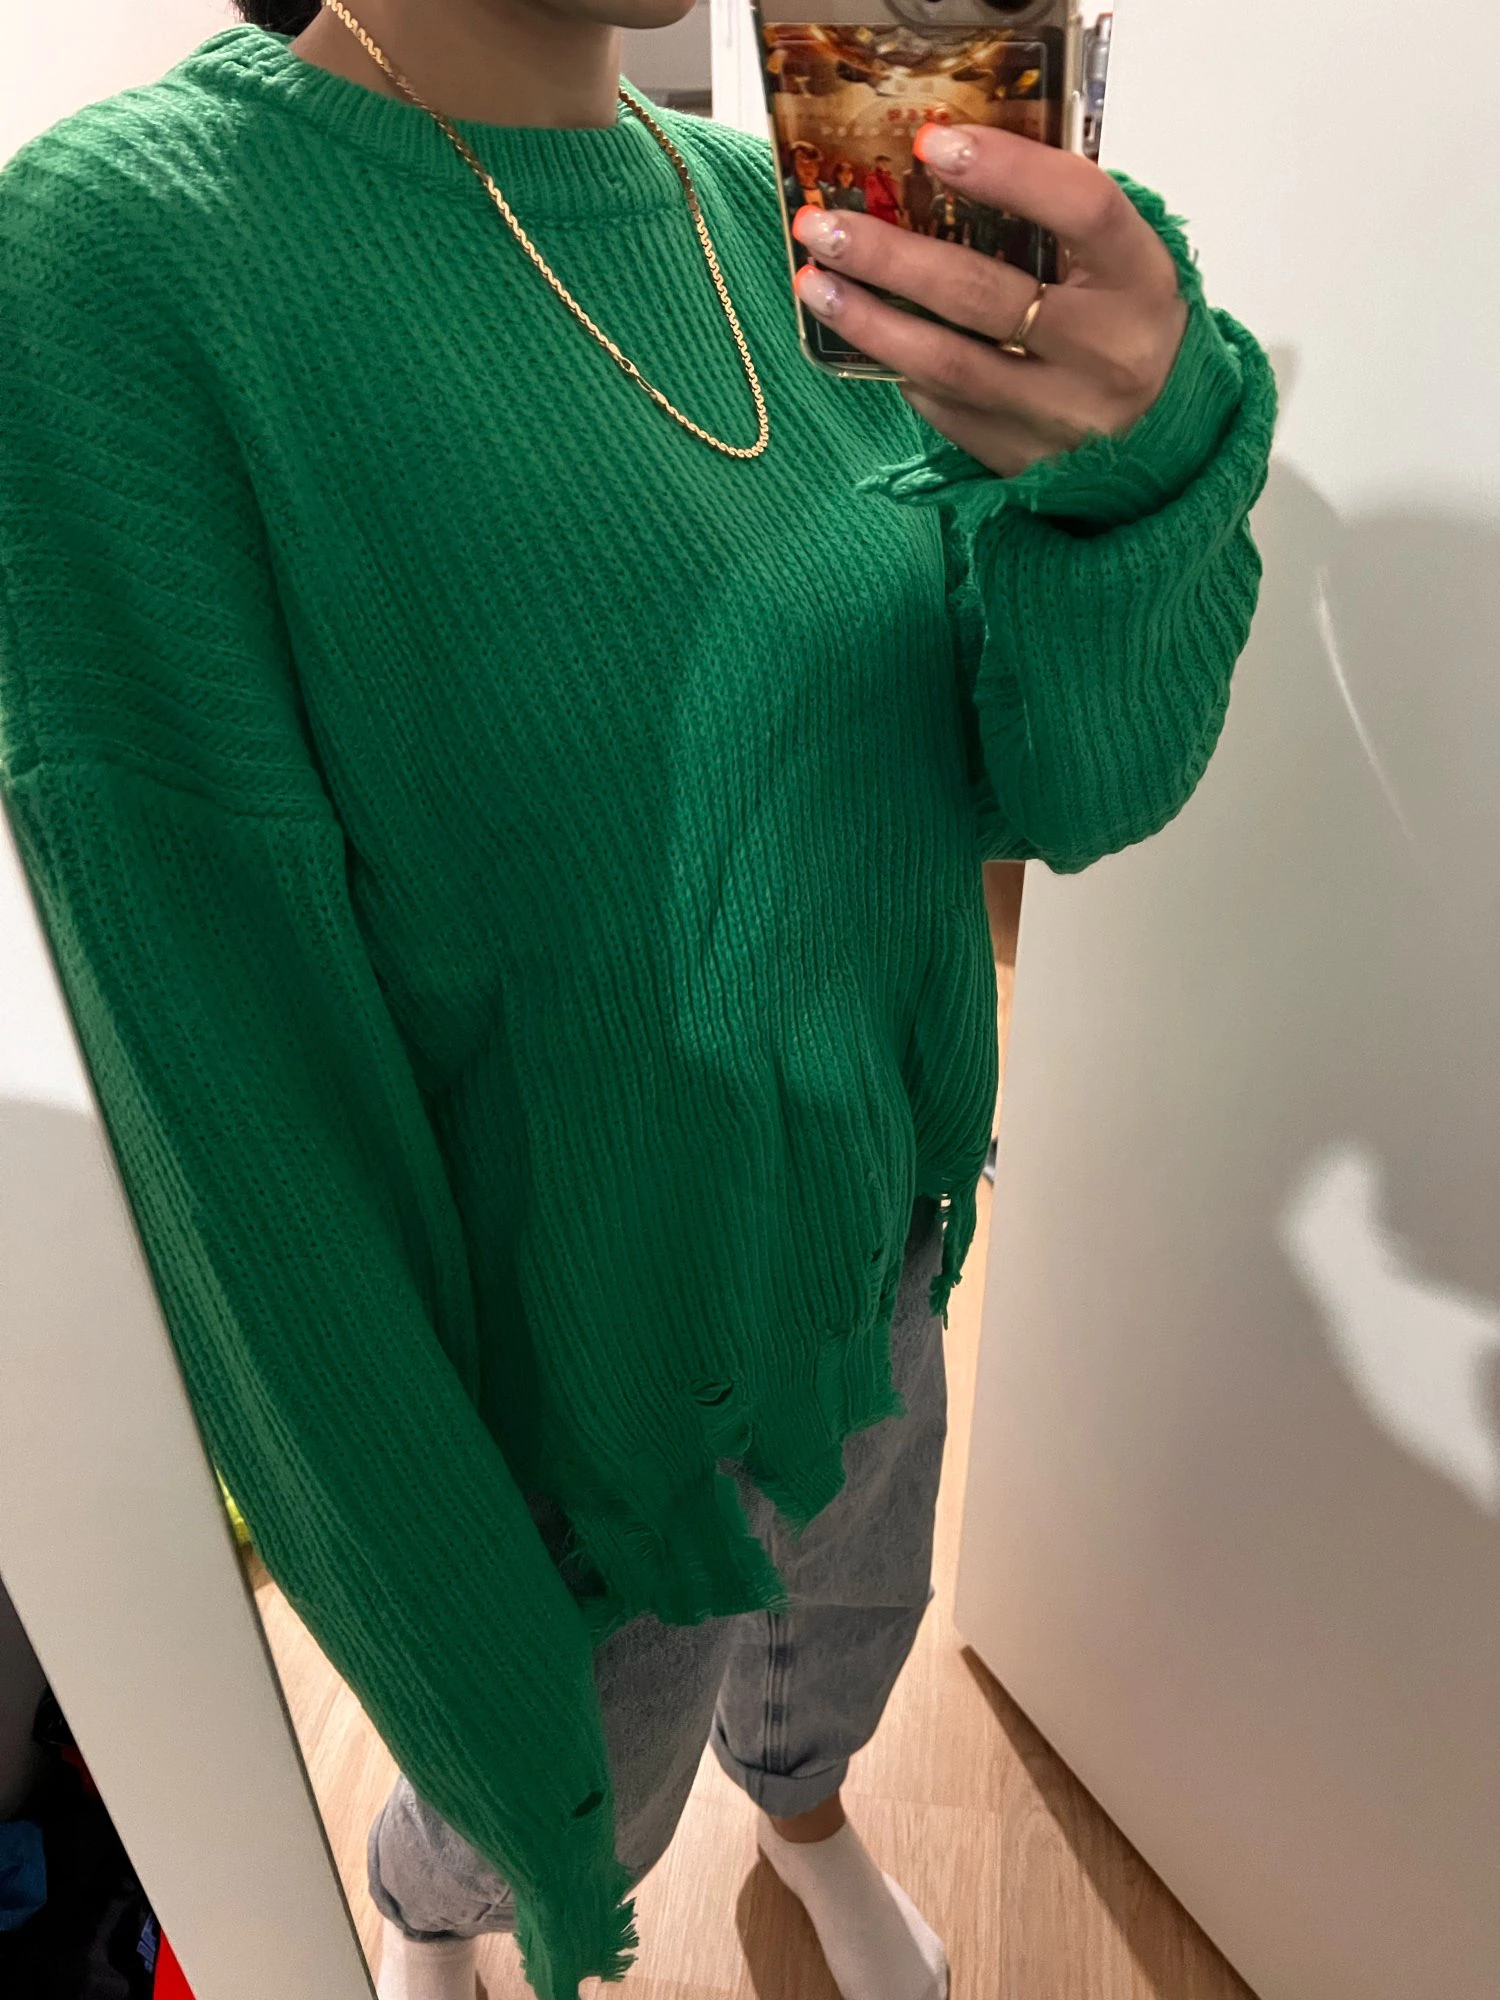 Fringe sweater